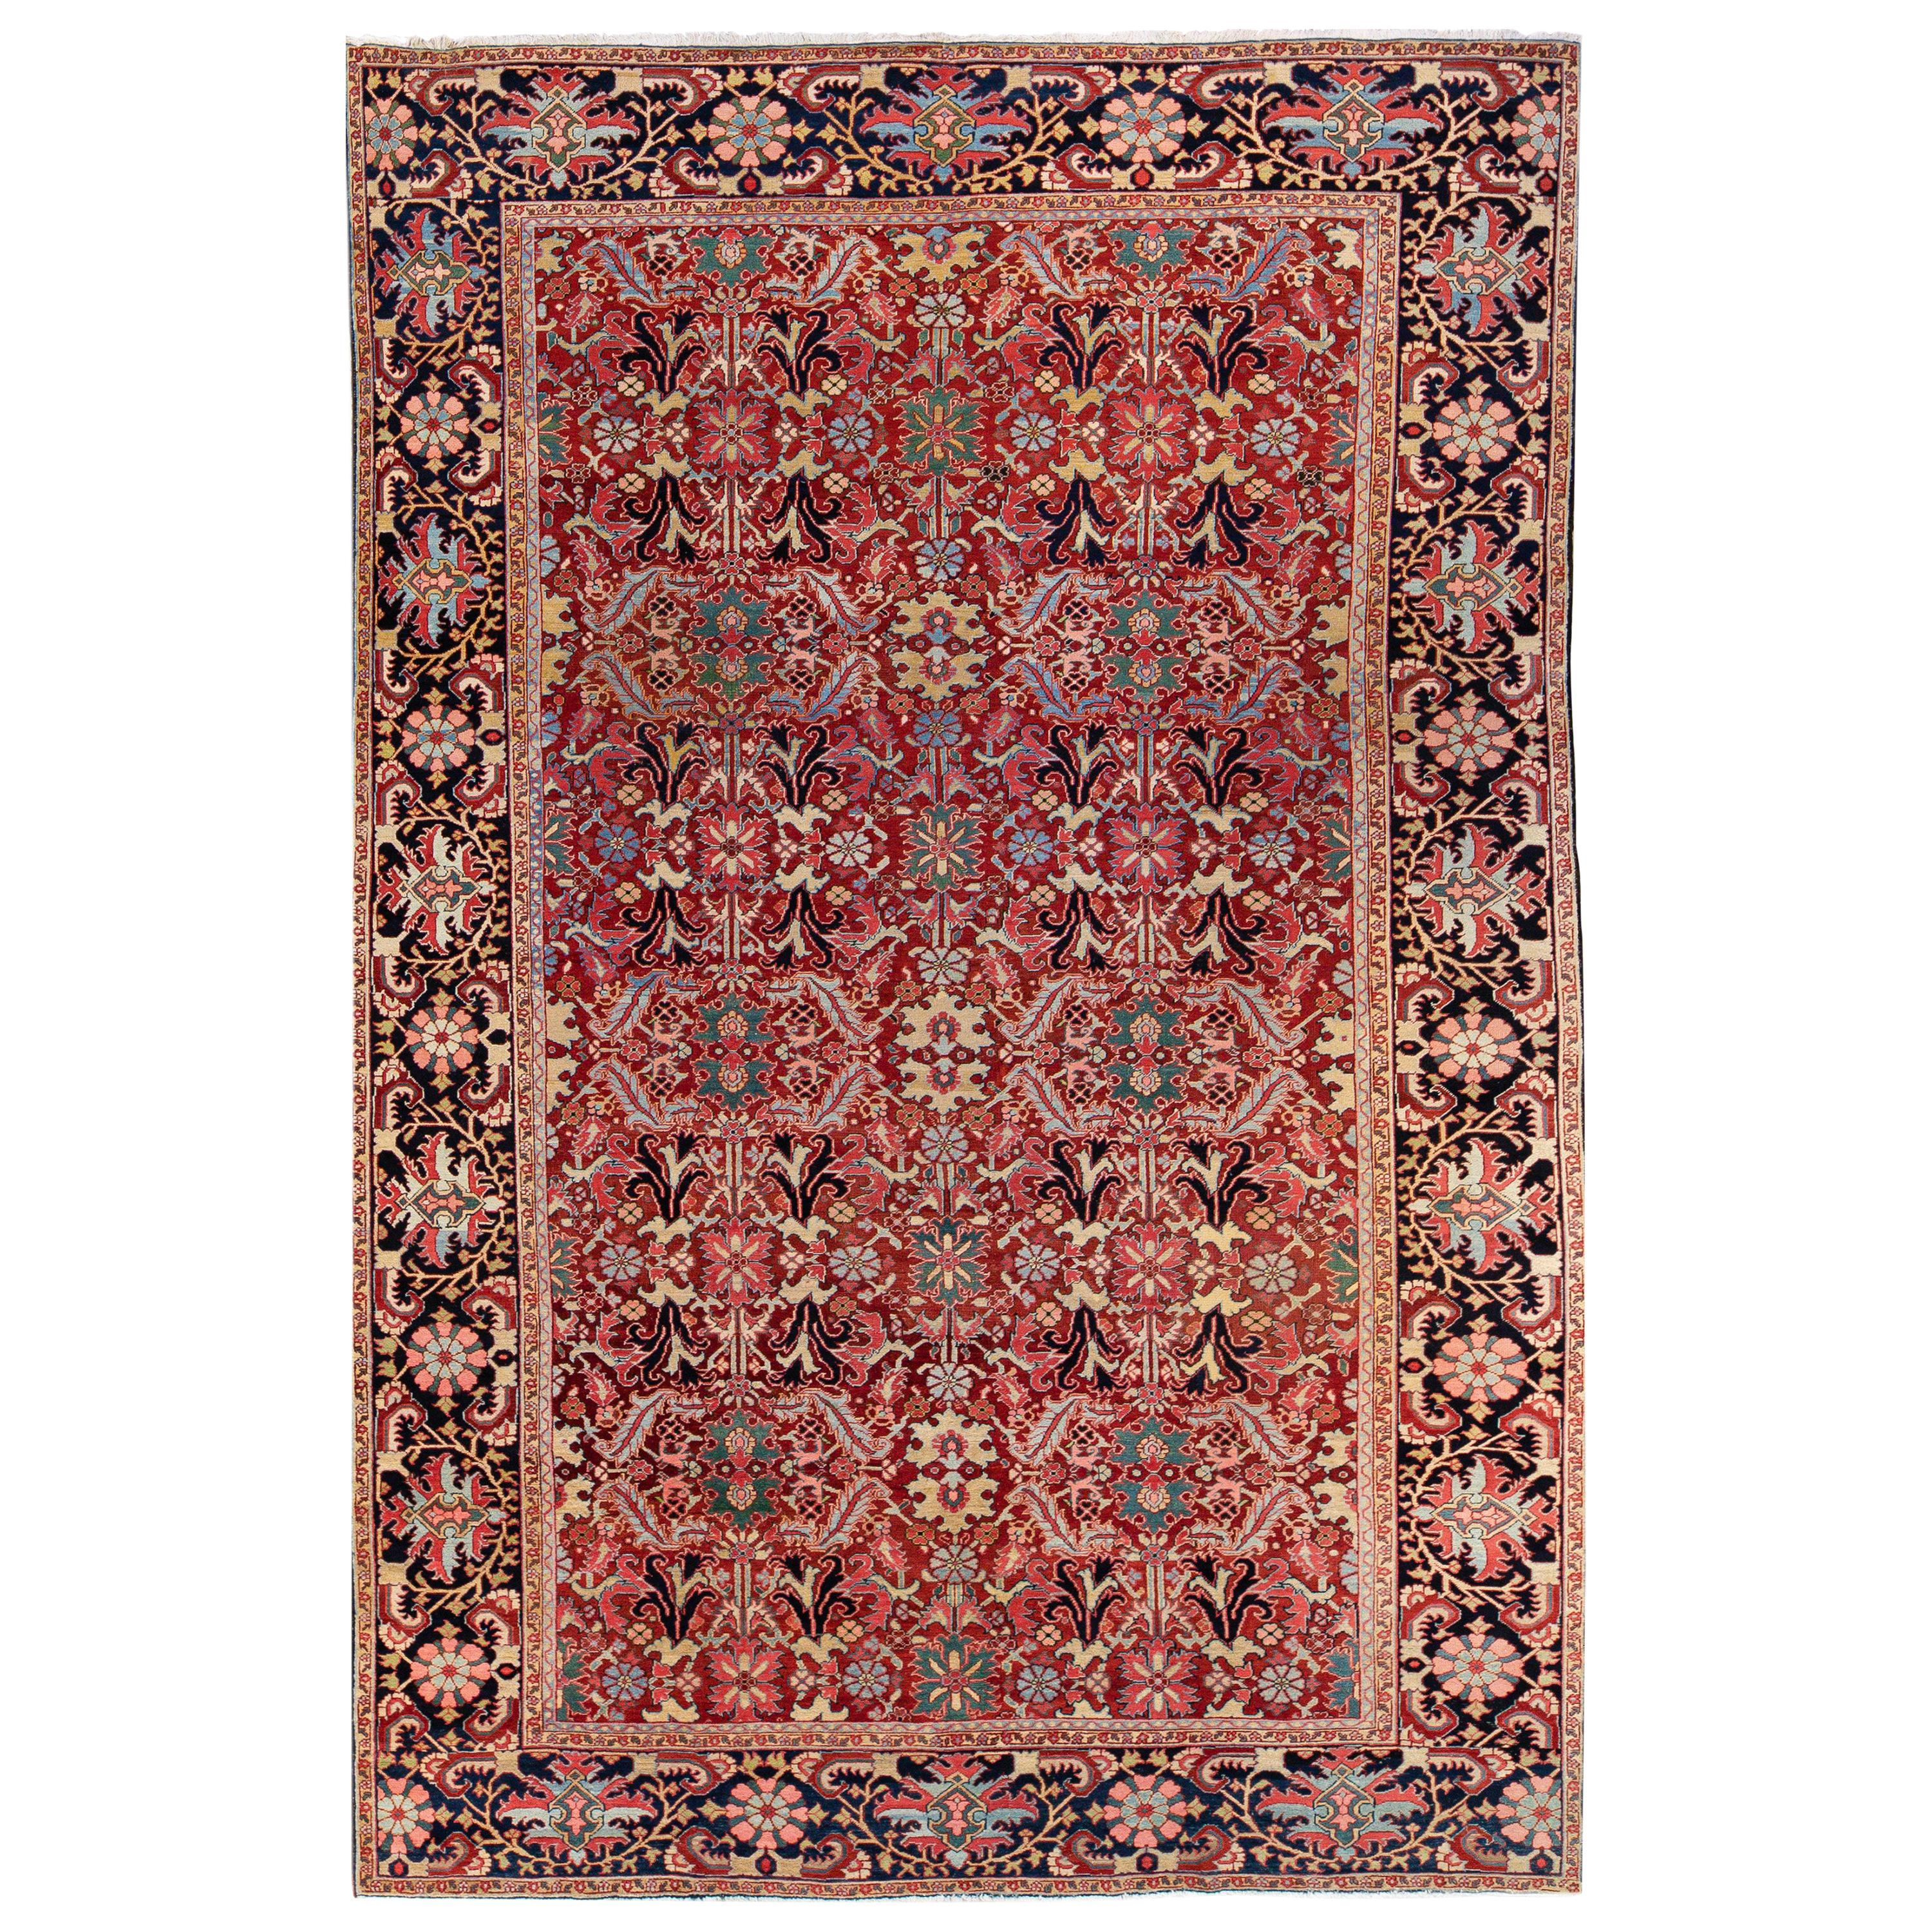 Antiker persischer Heriz handgefertigter mehrfarbiger, floral gestalteter roter Oversize-Wollteppich in Übergröße